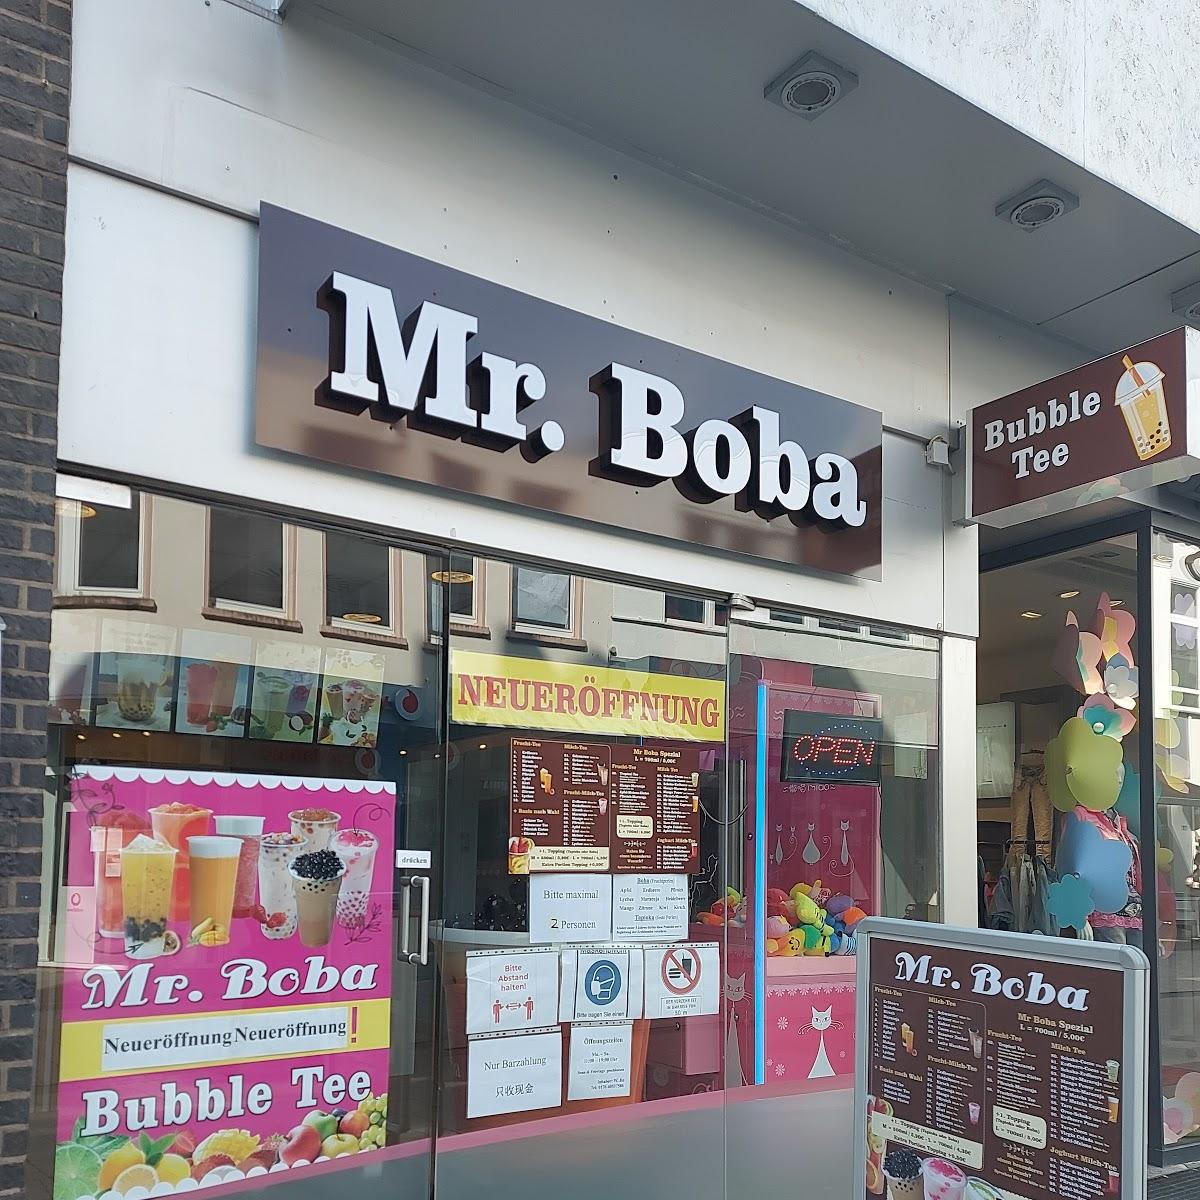 Restaurant "Mr. Boba" in Krefeld